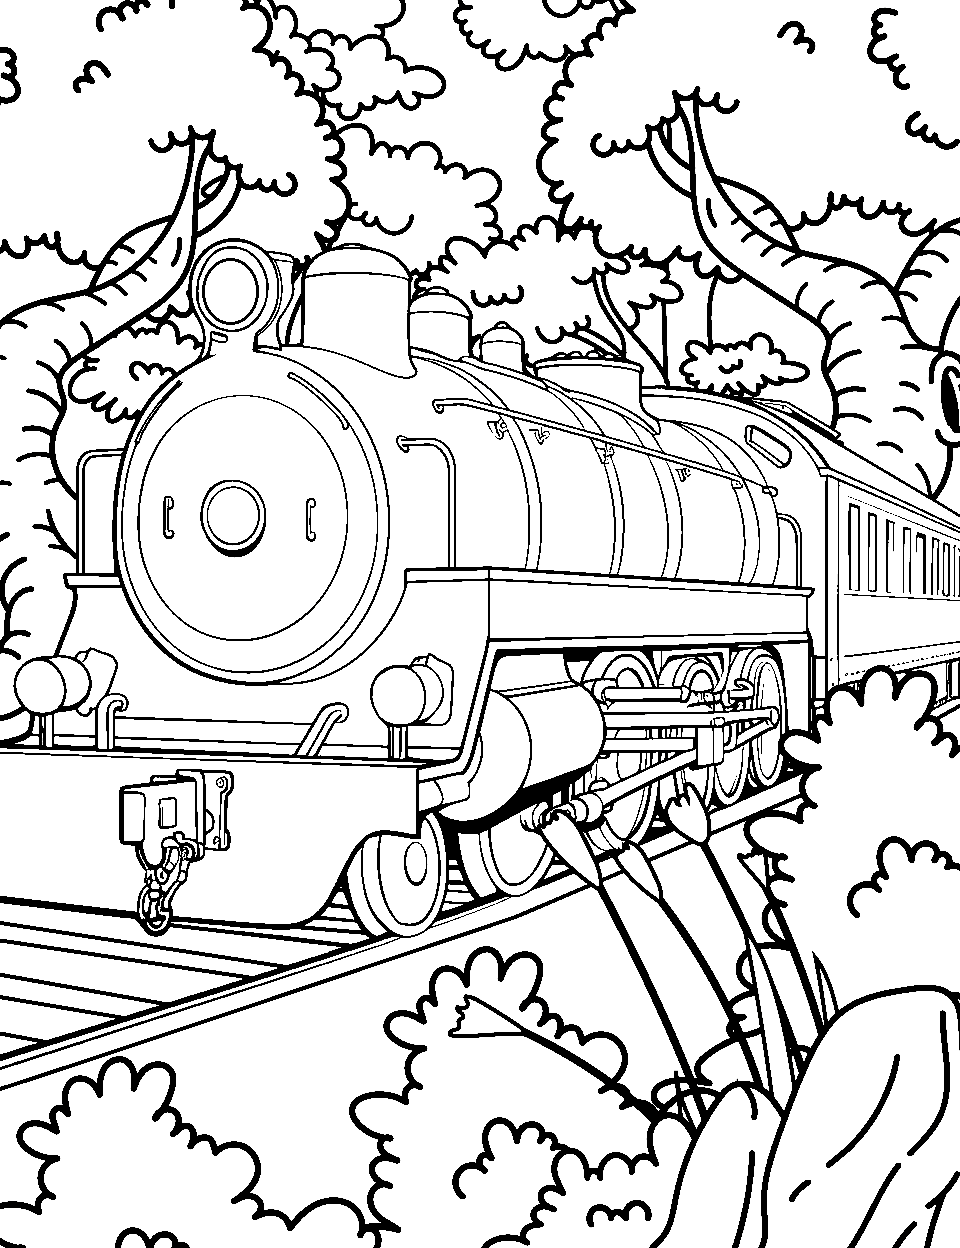 Jungle Safari Train Coloring Page - A train passing through a lush jungle.